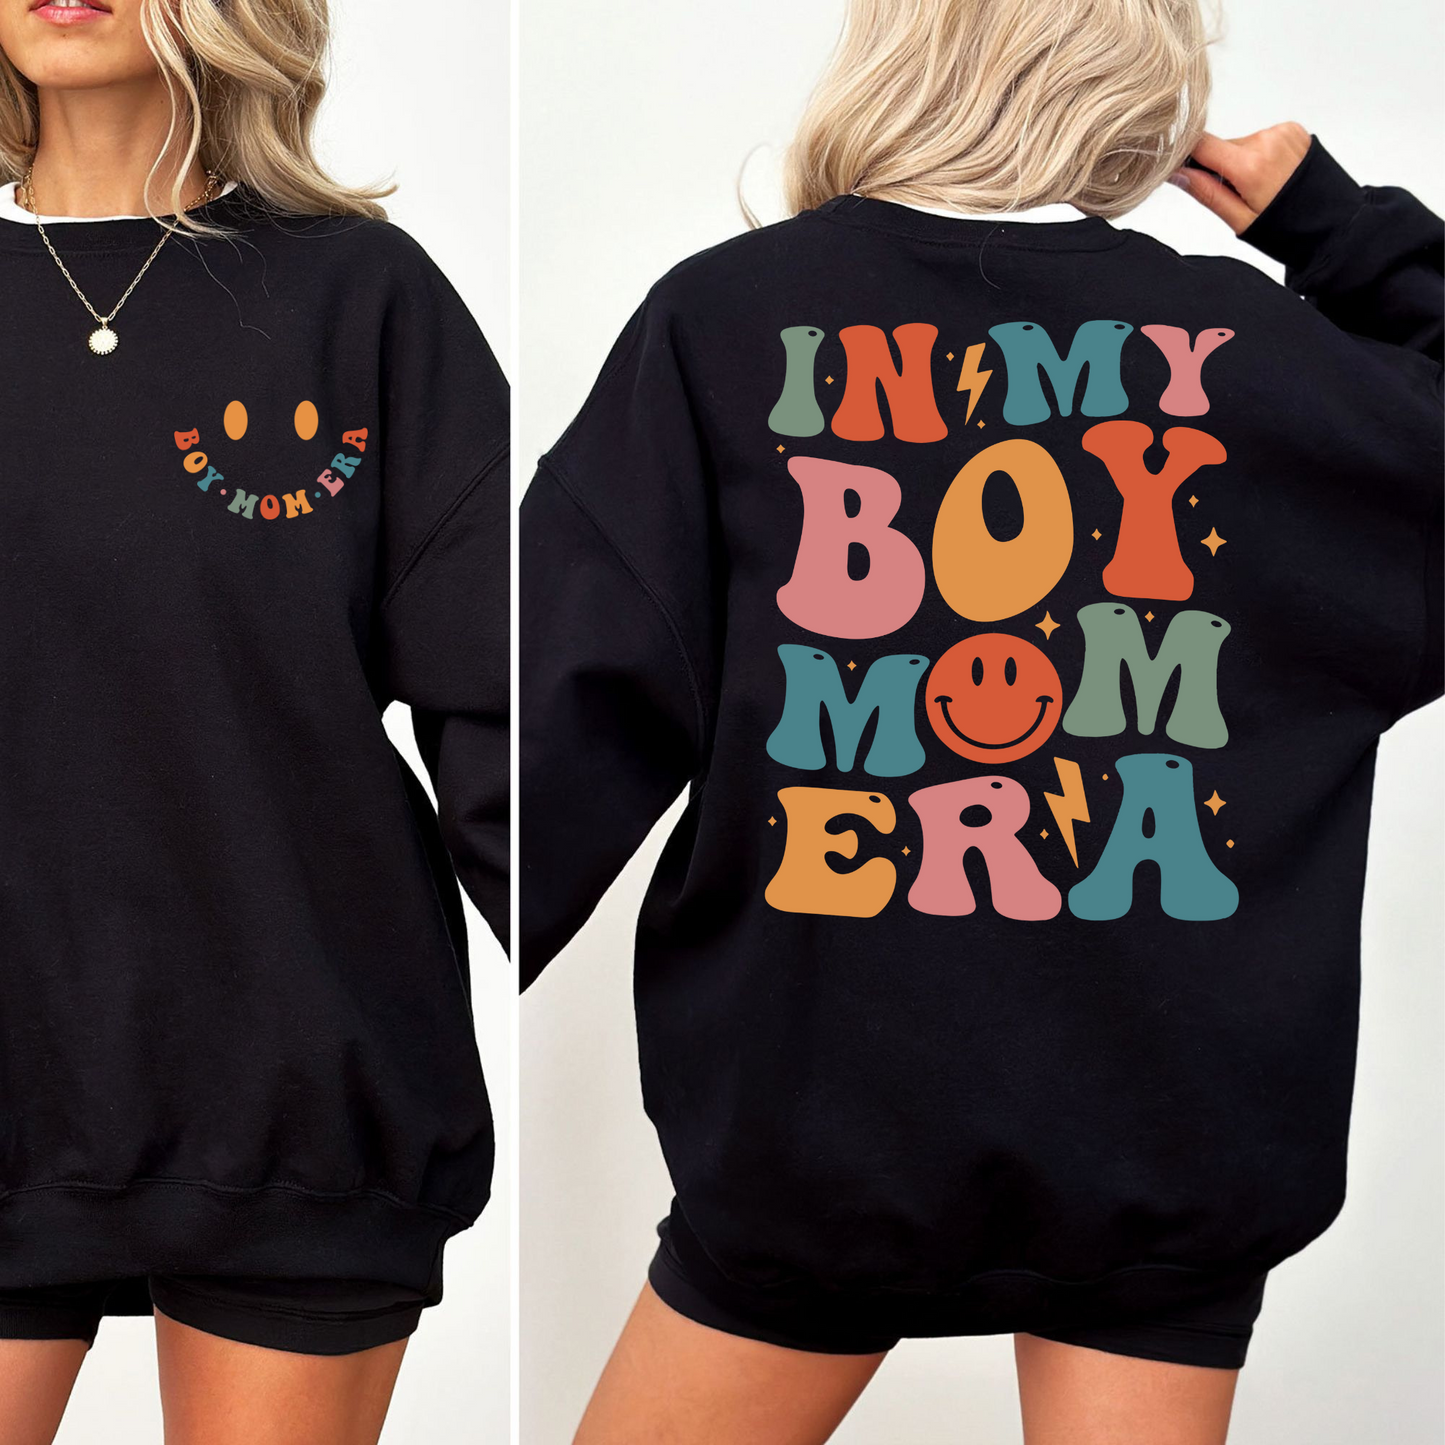 Boy Mom Era Sweatshirt - Das Must-Have für Mütter